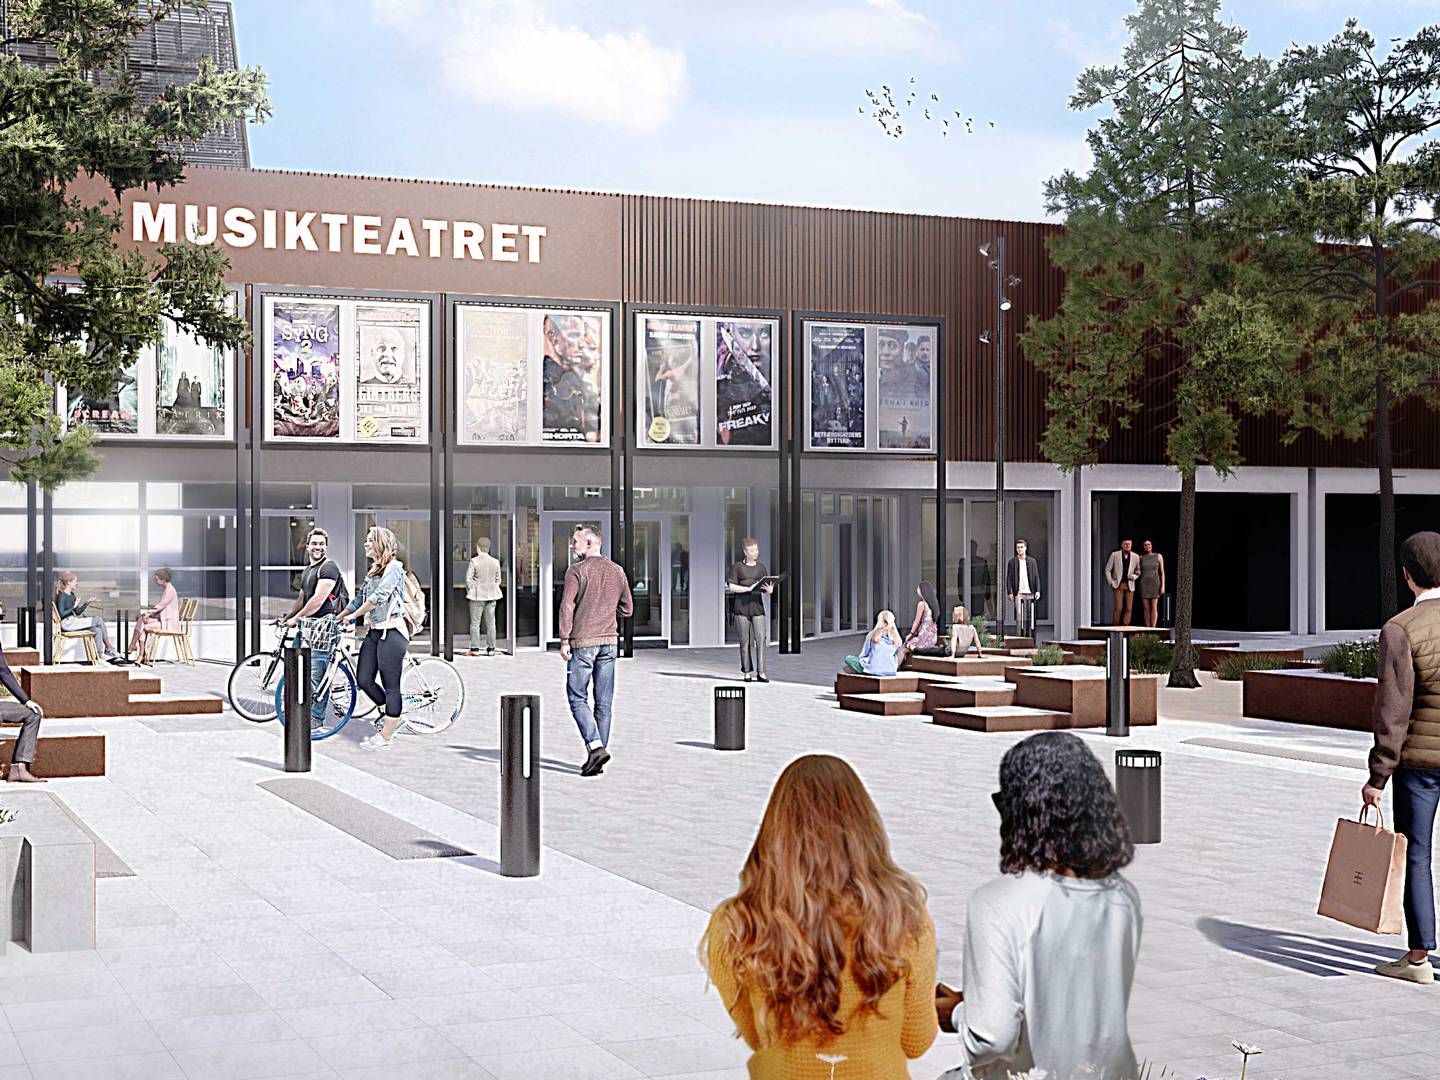 Kulturinstitutionerne Forbrændingen, biblioteket og, som her på billedet, Musikteatret skal integreres i den nye bymidte i Albertslund. | Foto: PR-visualisering / Urban Power for Citycon